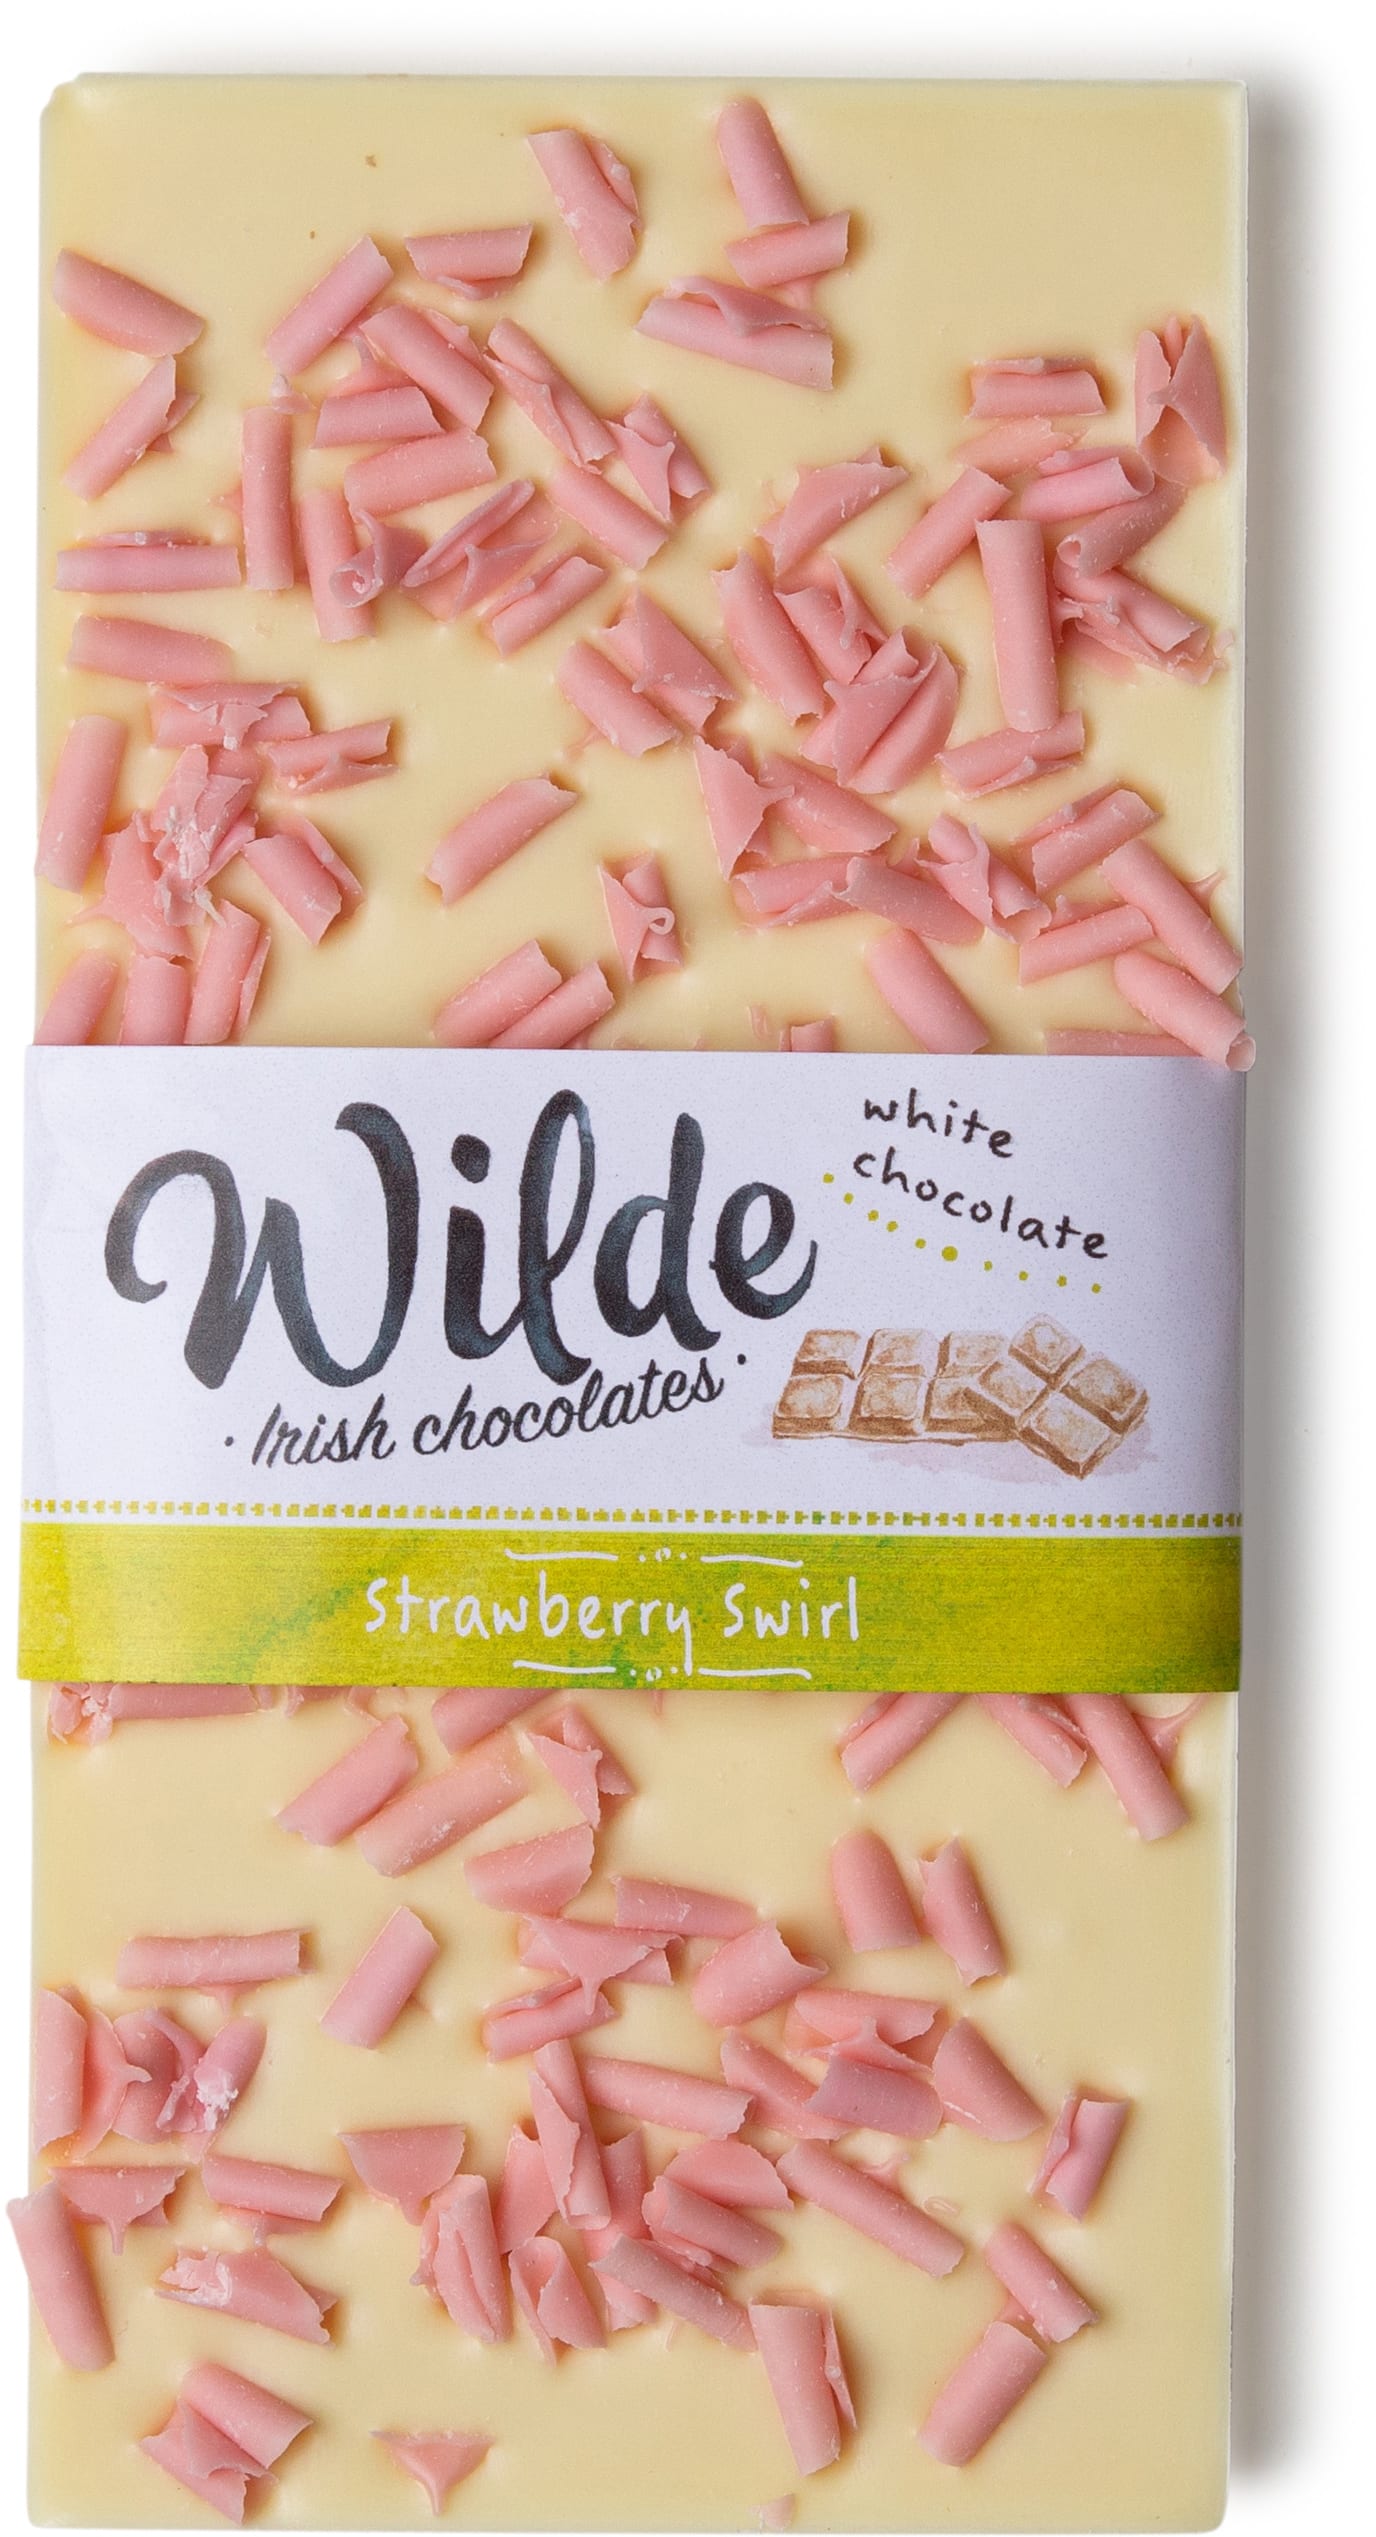 strawberry swirl cholocate bar - Wilde Irish Chocolates